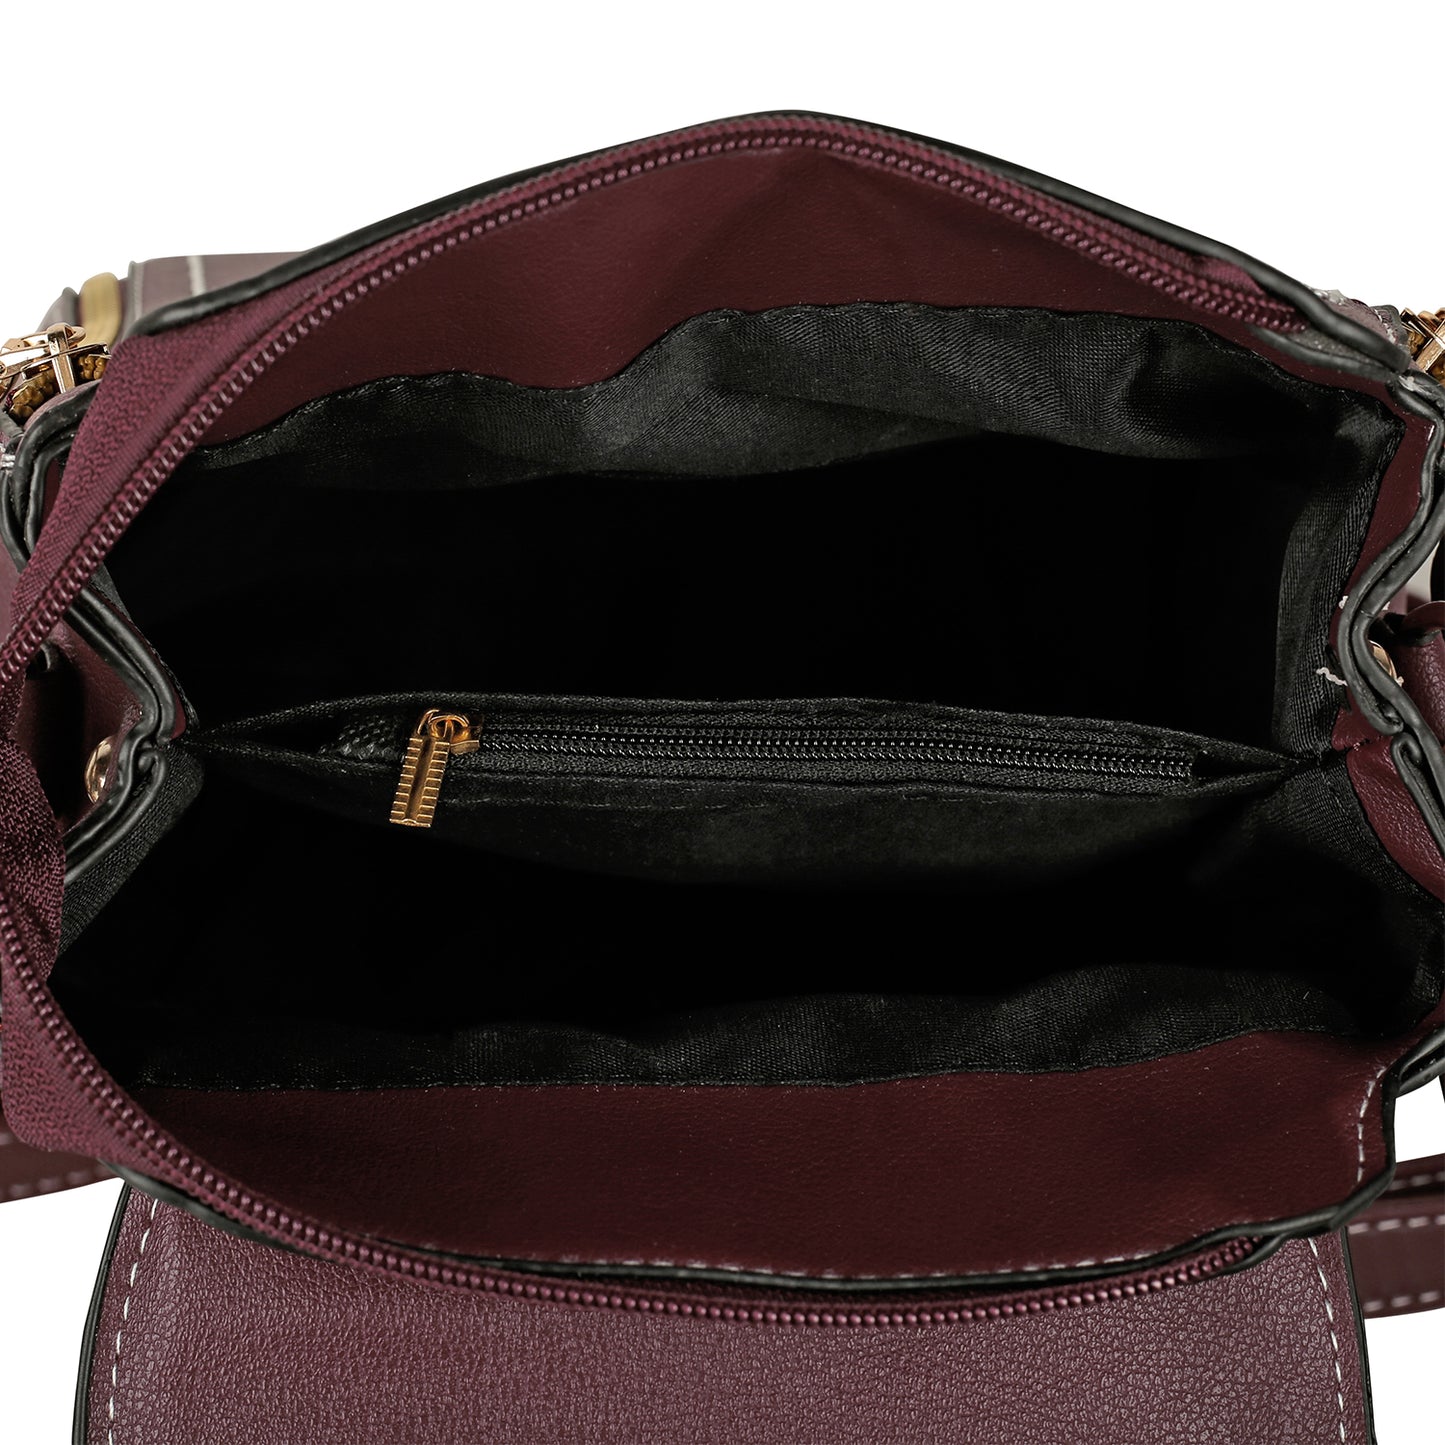 Angeline's regular size branded Backpack for women